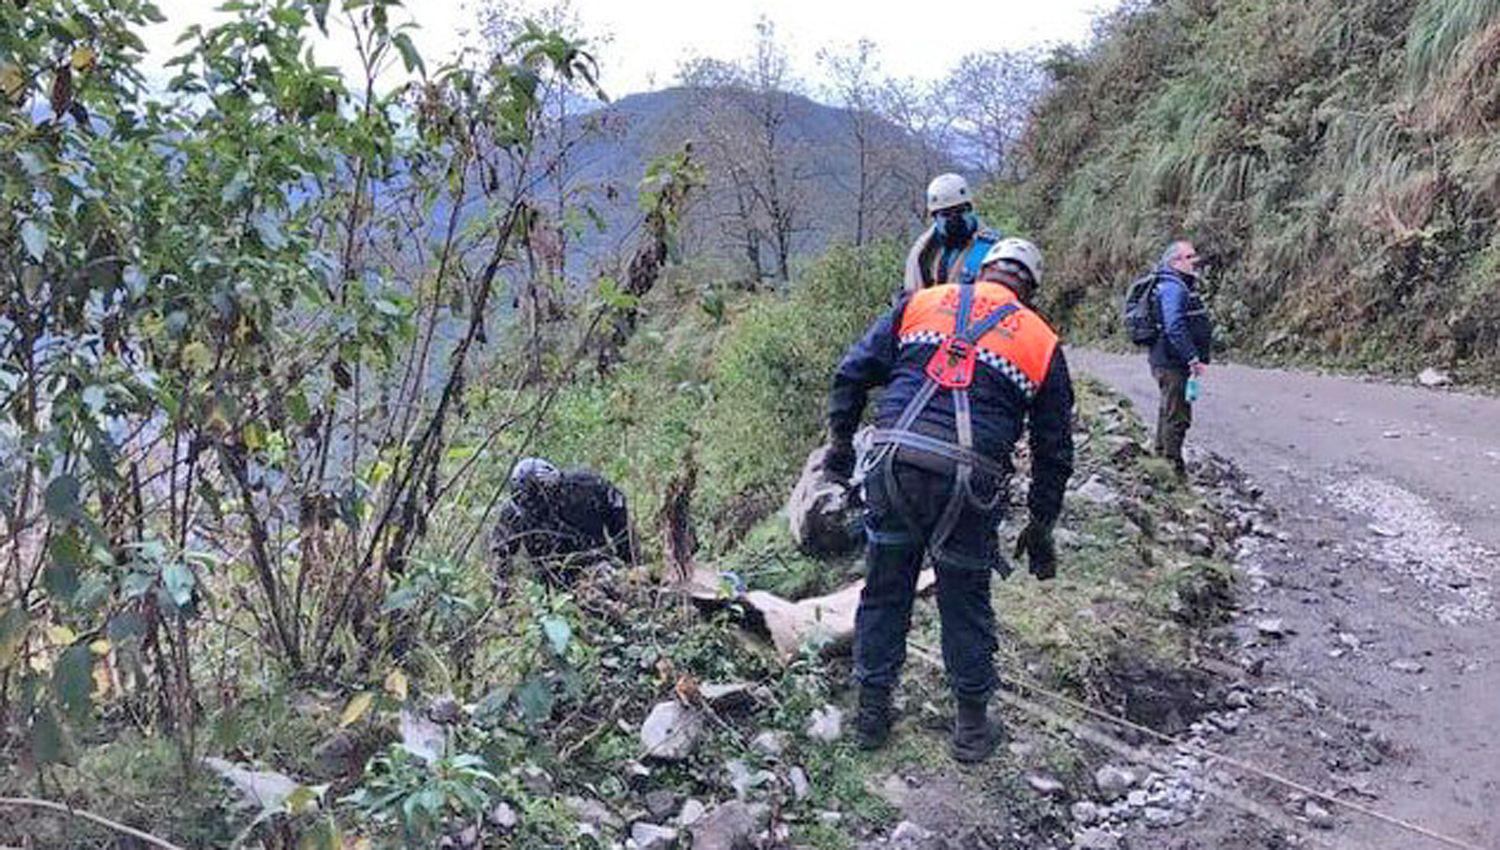 INVESTIGACIÓN Policias trabajan en donde hallaron el cuerpo sin vida de Luis Espinoza
